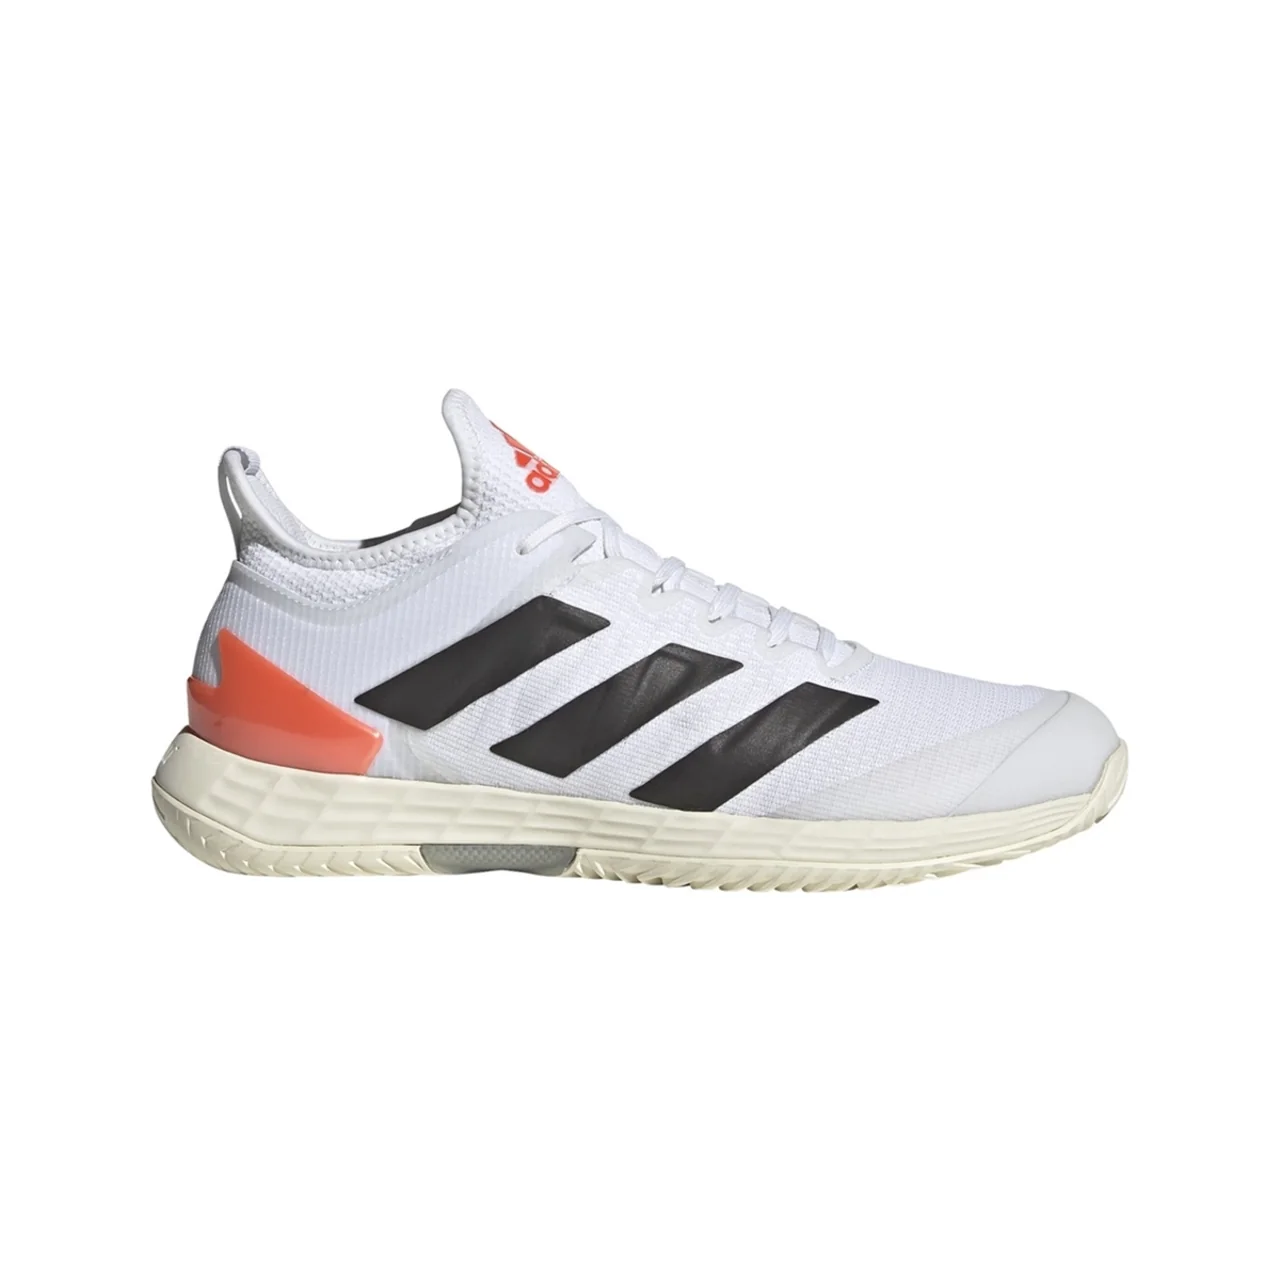 Adidas Adizero Ubersonic 4 M Tennis/ Padel 2021 White/Red